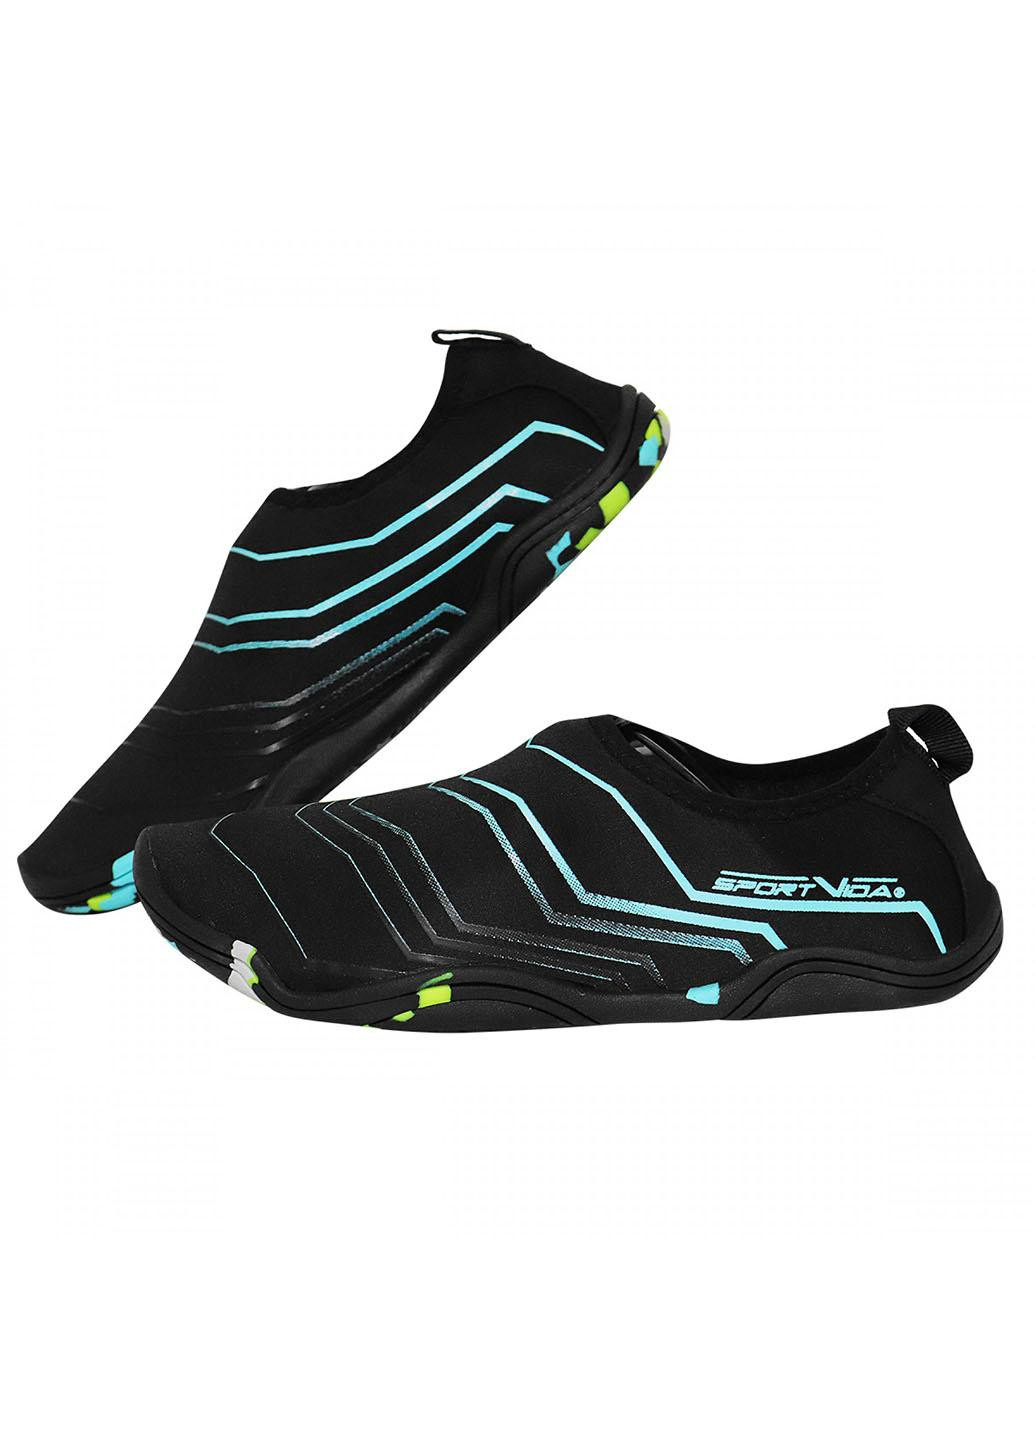 Взуття для пляжу і коралів (аквашузи) SV-GY0005-R36 Size 36 Black/Blue SportVida (258486770)